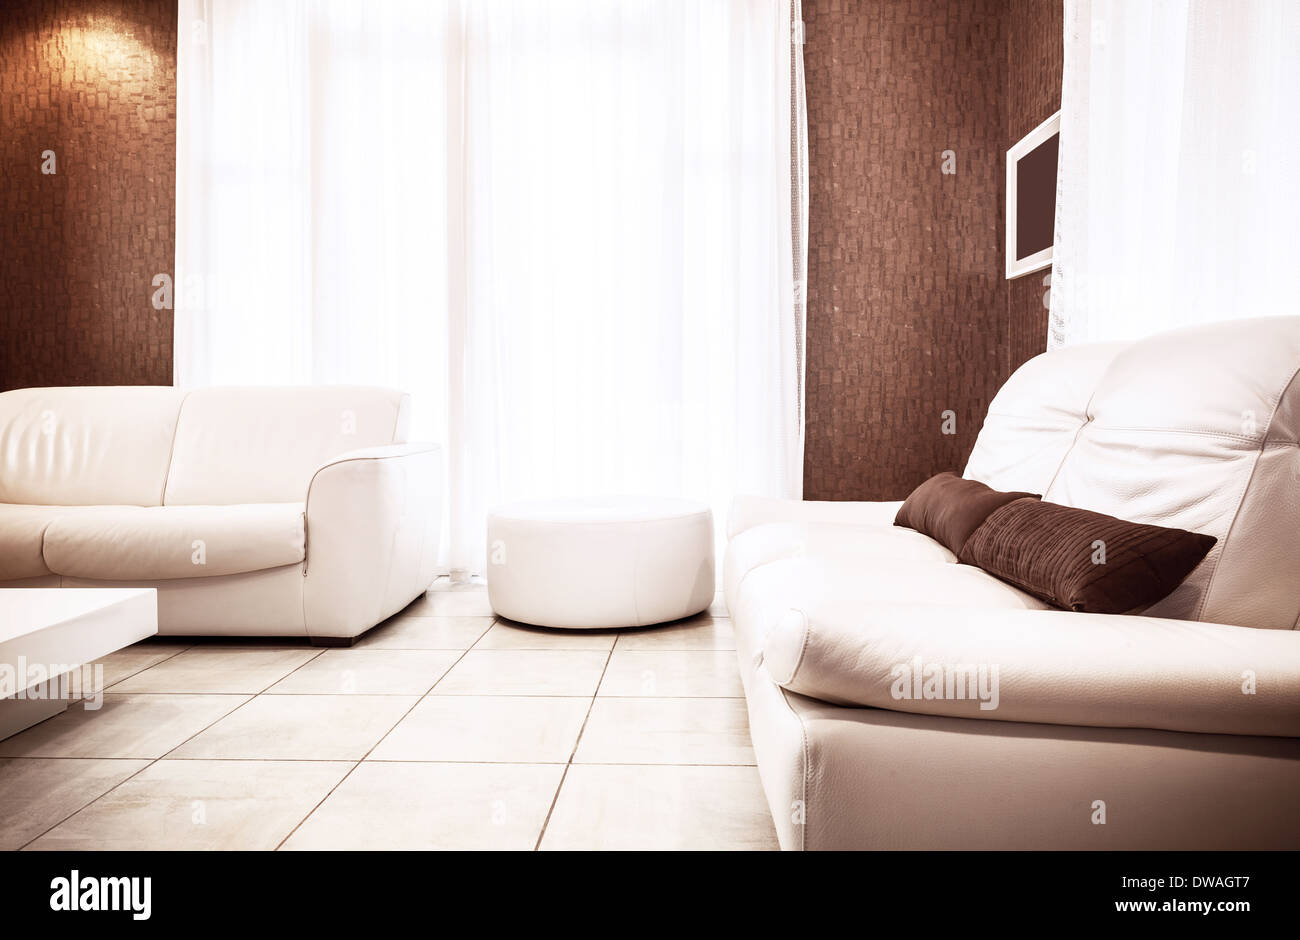 Appartamento di lusso interno in bianco&colori marrone, due elegante divano in pelle e pouf, luminoso della luce del sole attraverso la grande finestra Foto Stock